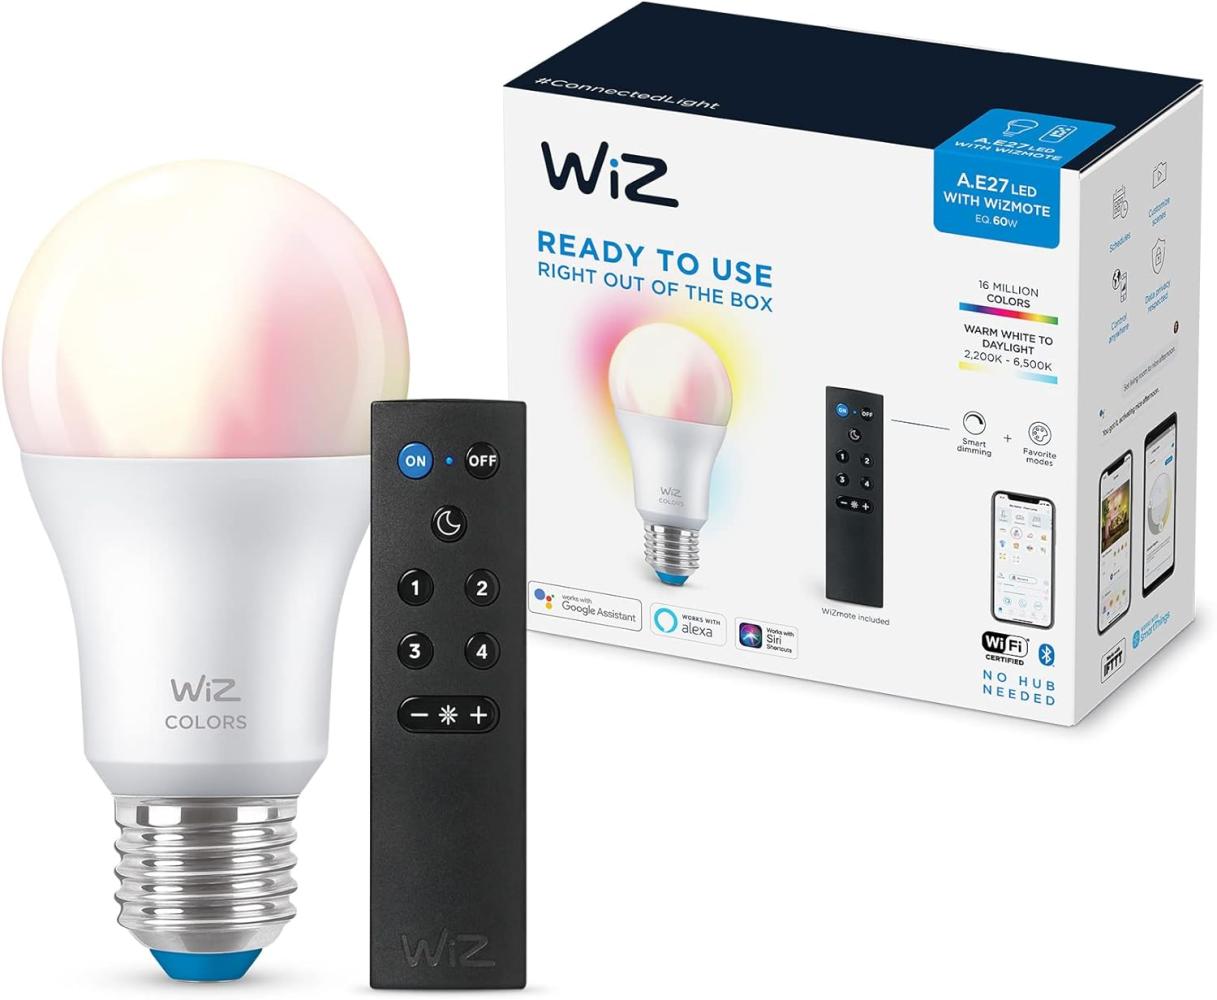 WiZ Tunable White & Color E27 Lampe, dimmbar, warm- bis kaltweiß, 16 Mio. Farben, 60W, smarte Steuerung per App/Stimme über WLAN, inkl. WiZMote Fernbedienung Bild 1